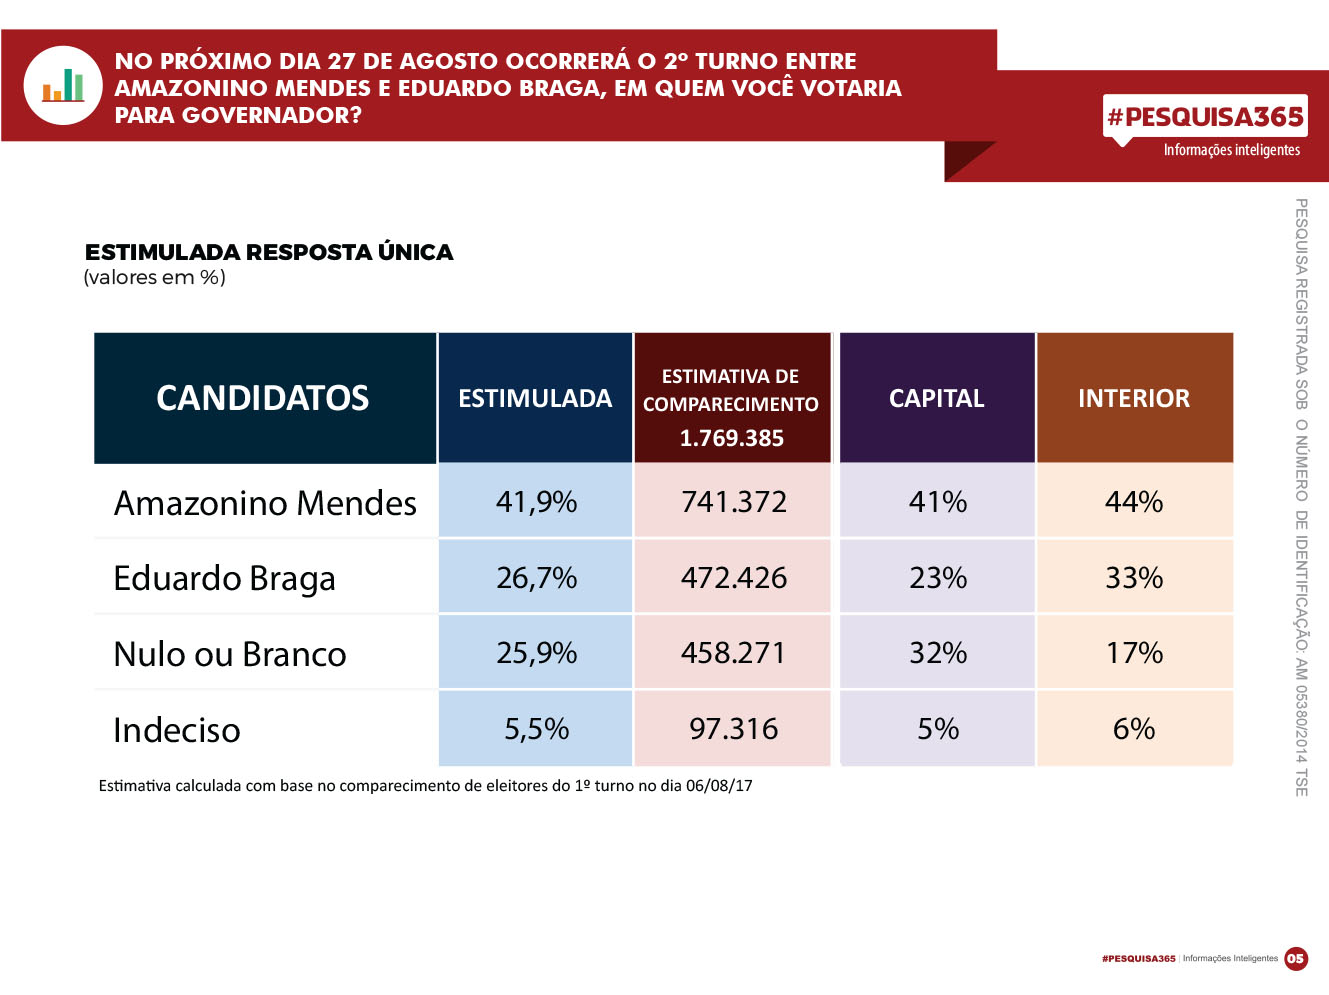 Durango Duarte - 2º turno: Amazonino segue na liderança; Eduardo perde para brancos e nulos em Manaus